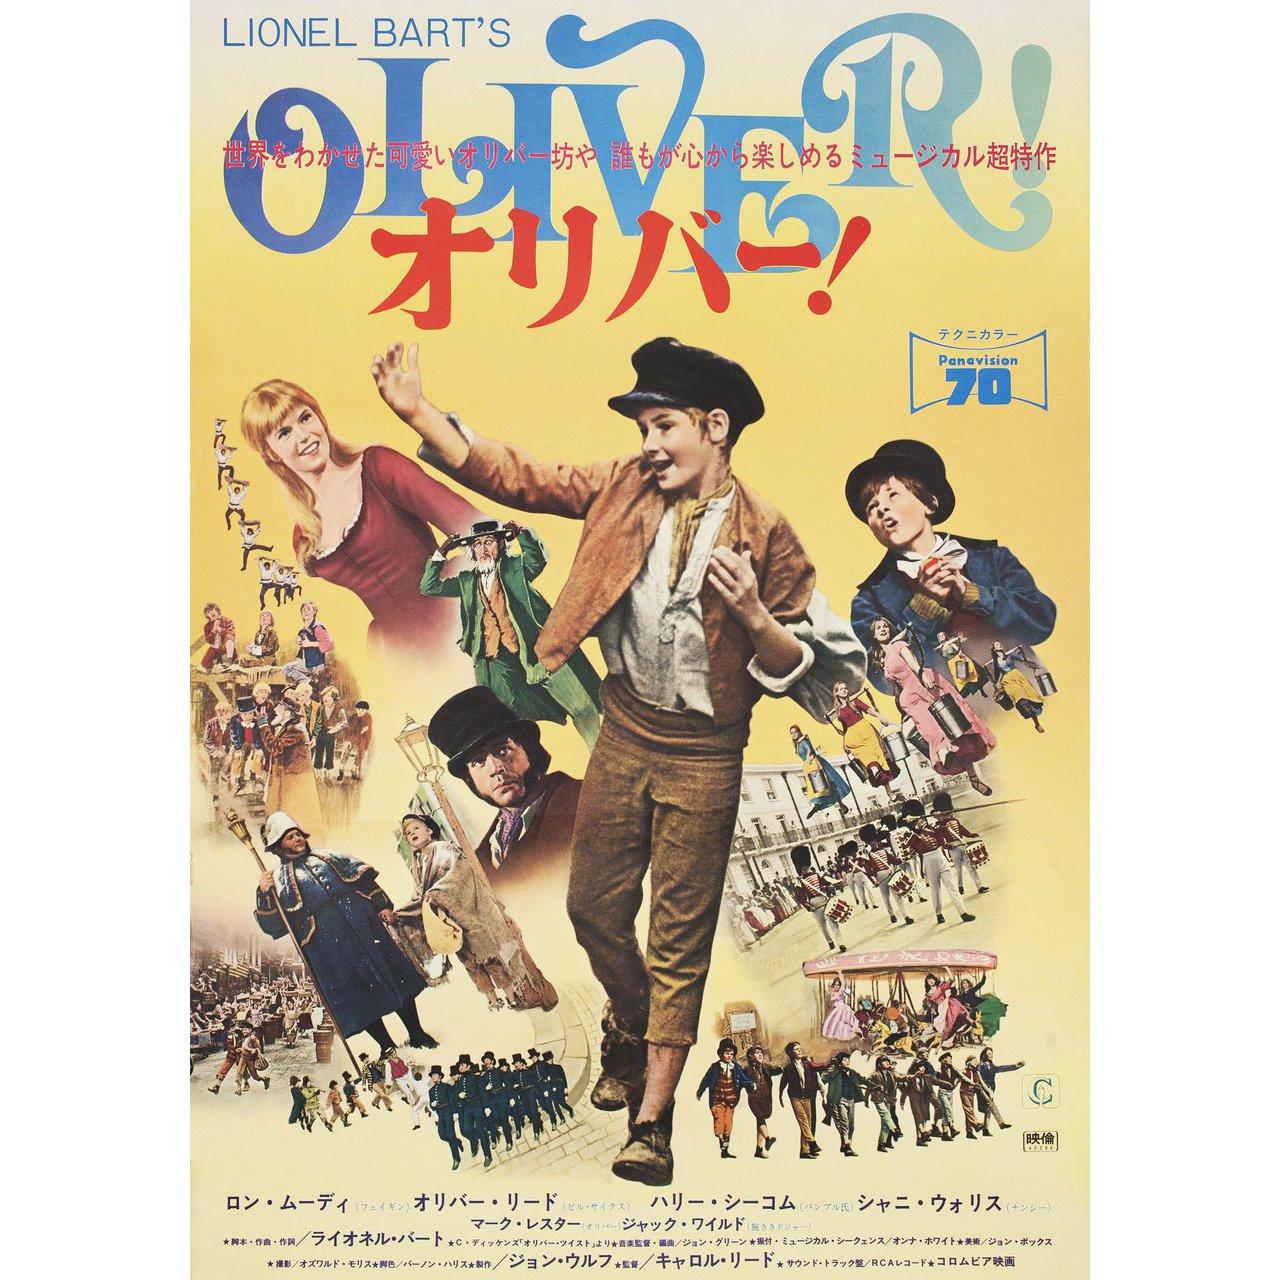 oliver 1968 poster